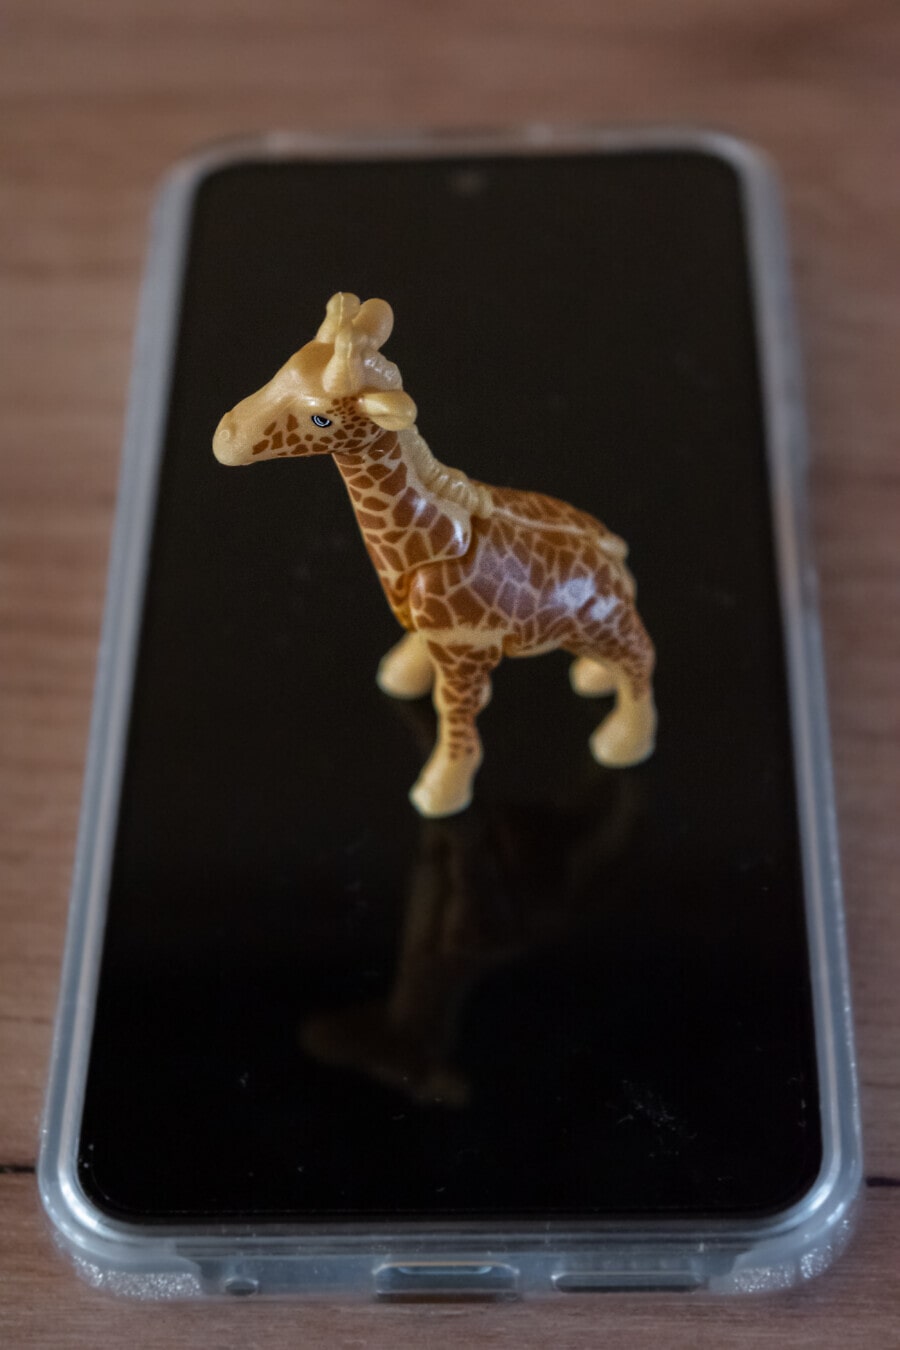 Primer plano del juguete de jirafa de plástico en miniatura en el teléfono móvil